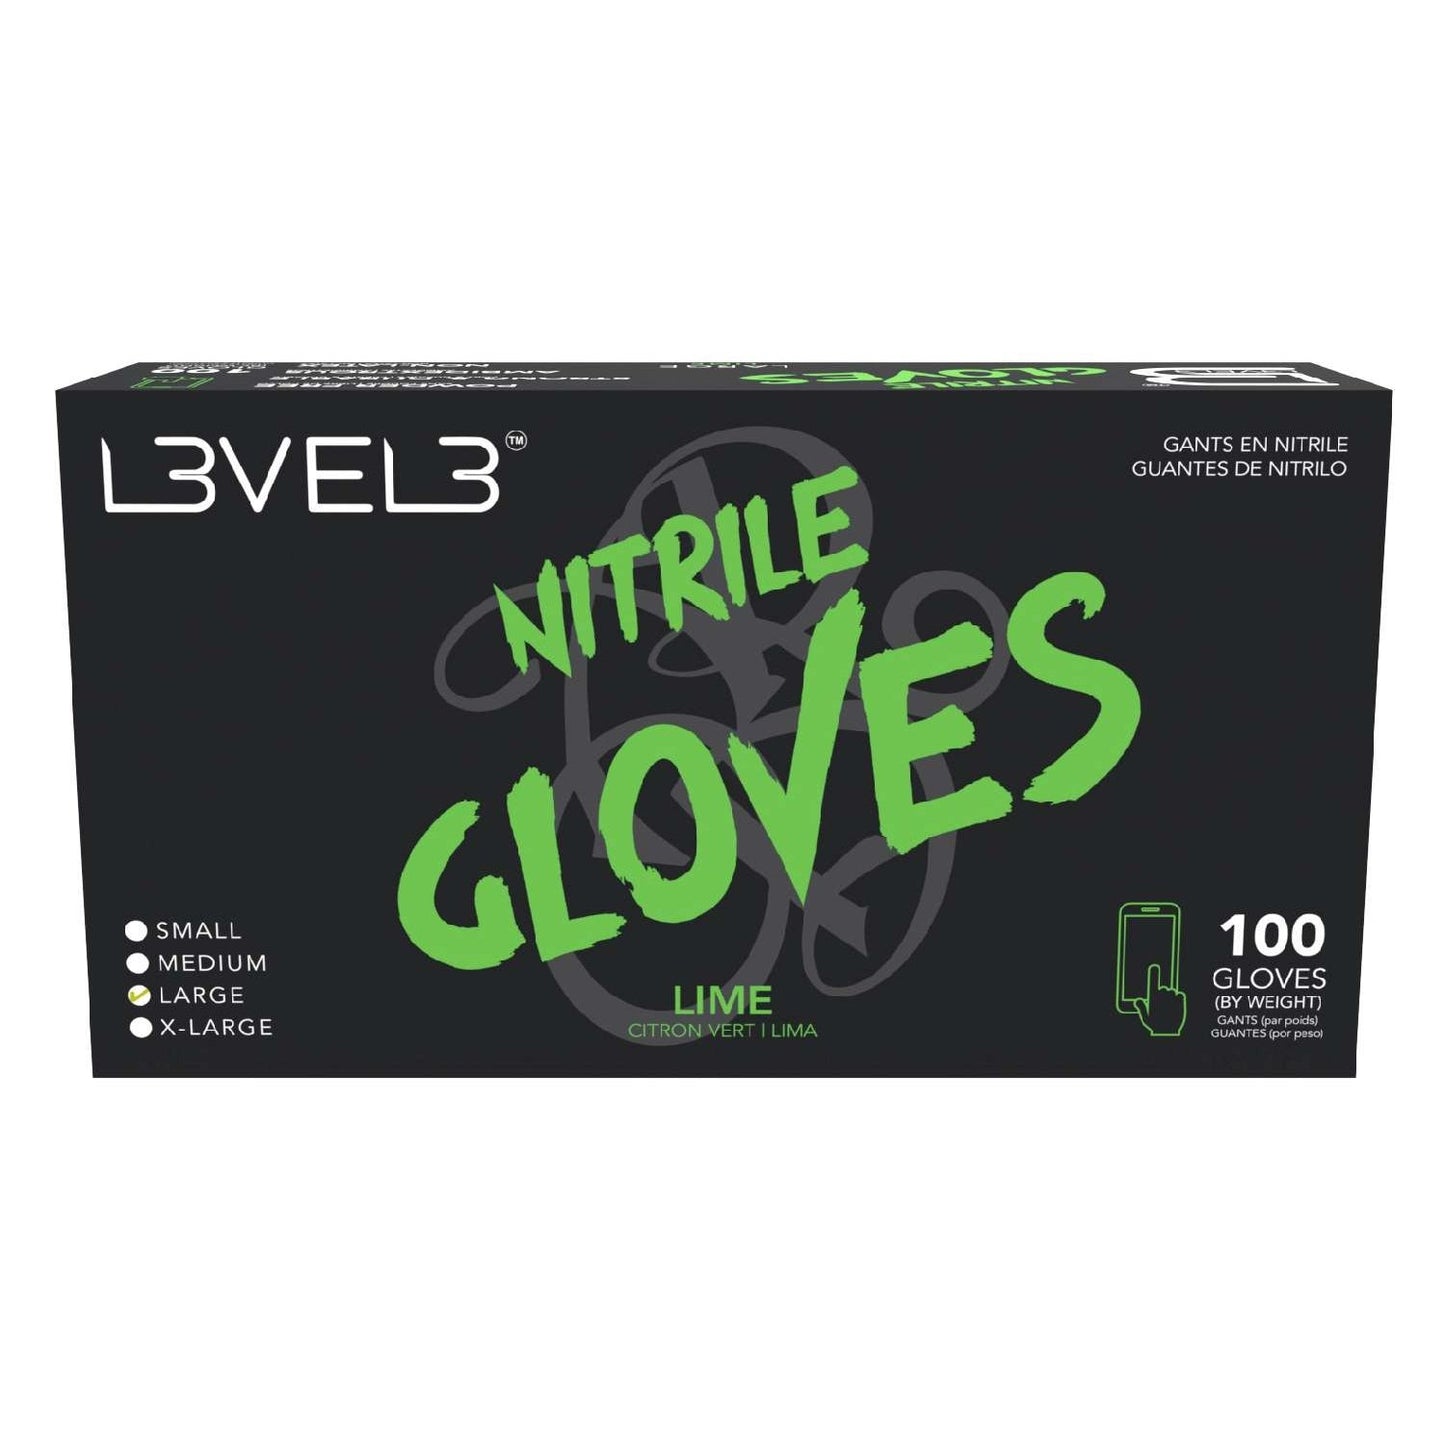 L3Vel3 Nitrile Gloves Lime Large 100 Piece